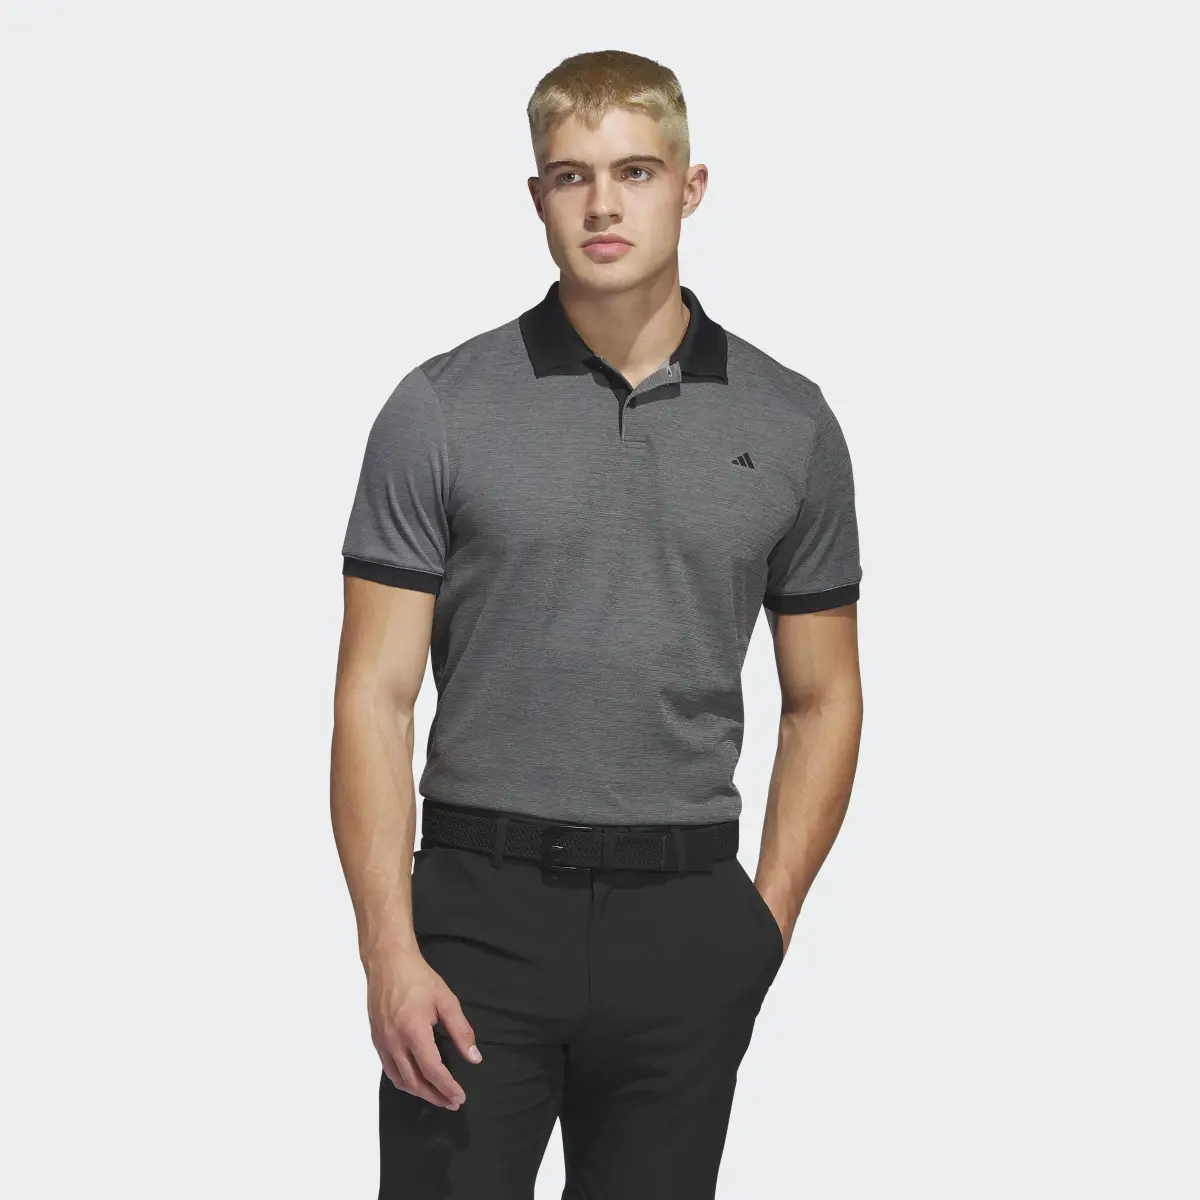 Adidas Ultimate365 No-Show Golf Polo Shirt. 2